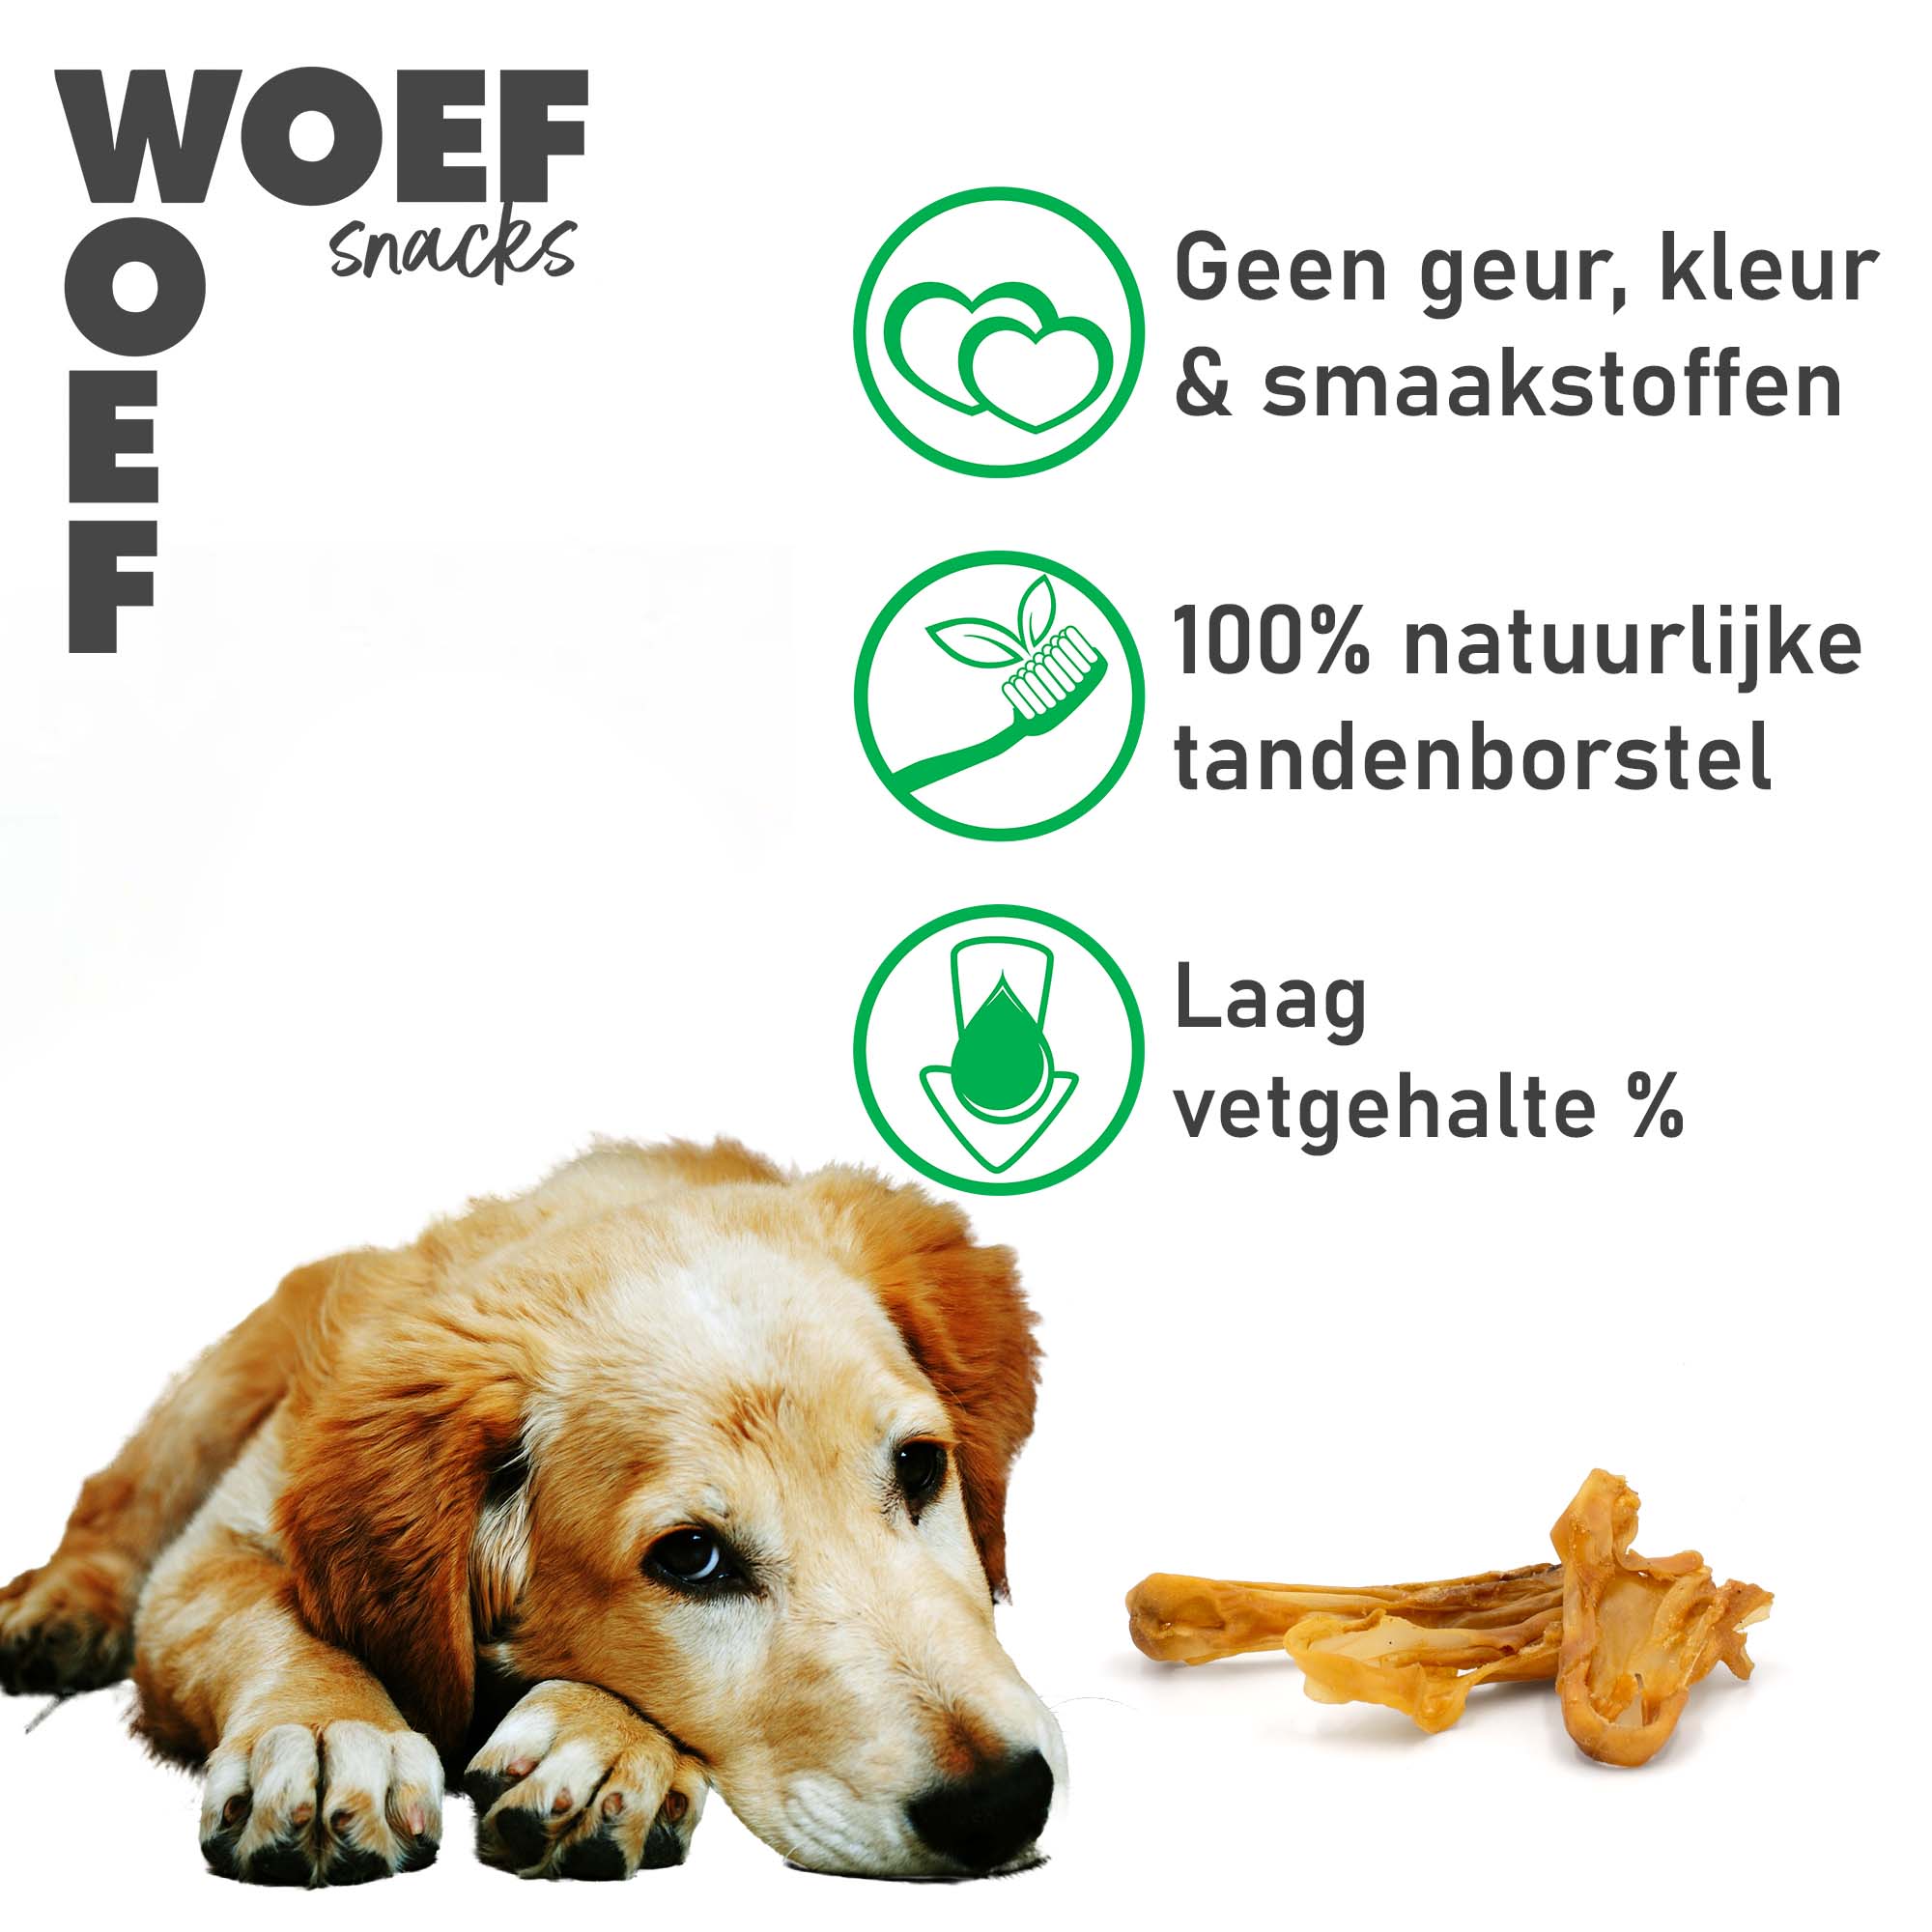 Ierse Setter hond met drie iconen op de foto. Bij het eerste icoon staat, zero geur-, kleur-, & smaakstoffen. Bij het tweede icoon staat dat het een 100% natuurlijke tandenborstel is, en bij het derde icoon staat dat het een laag vetgehalte bevat.